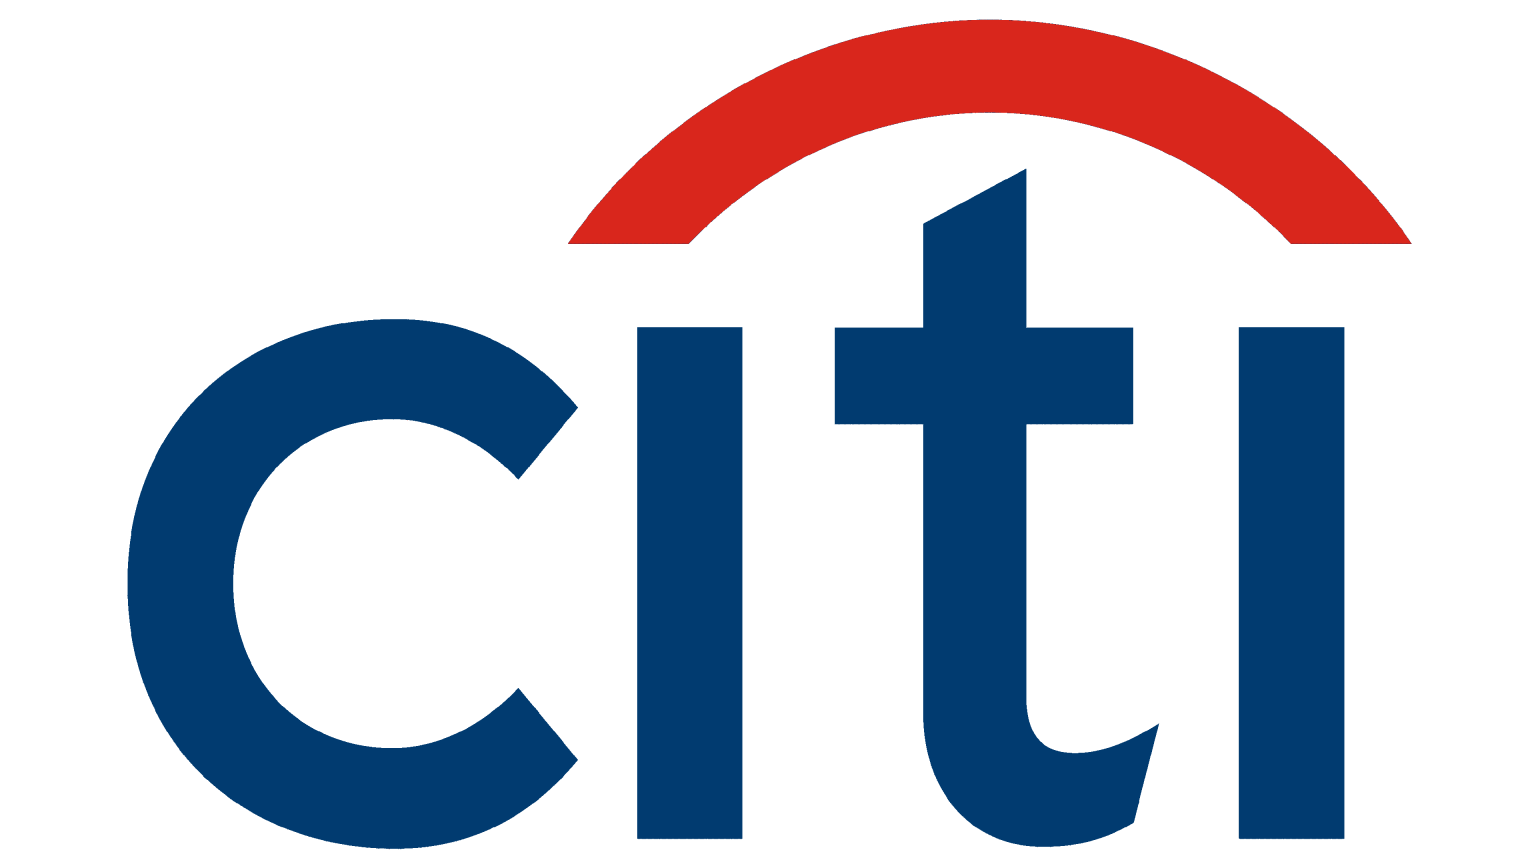 Citigroup logo